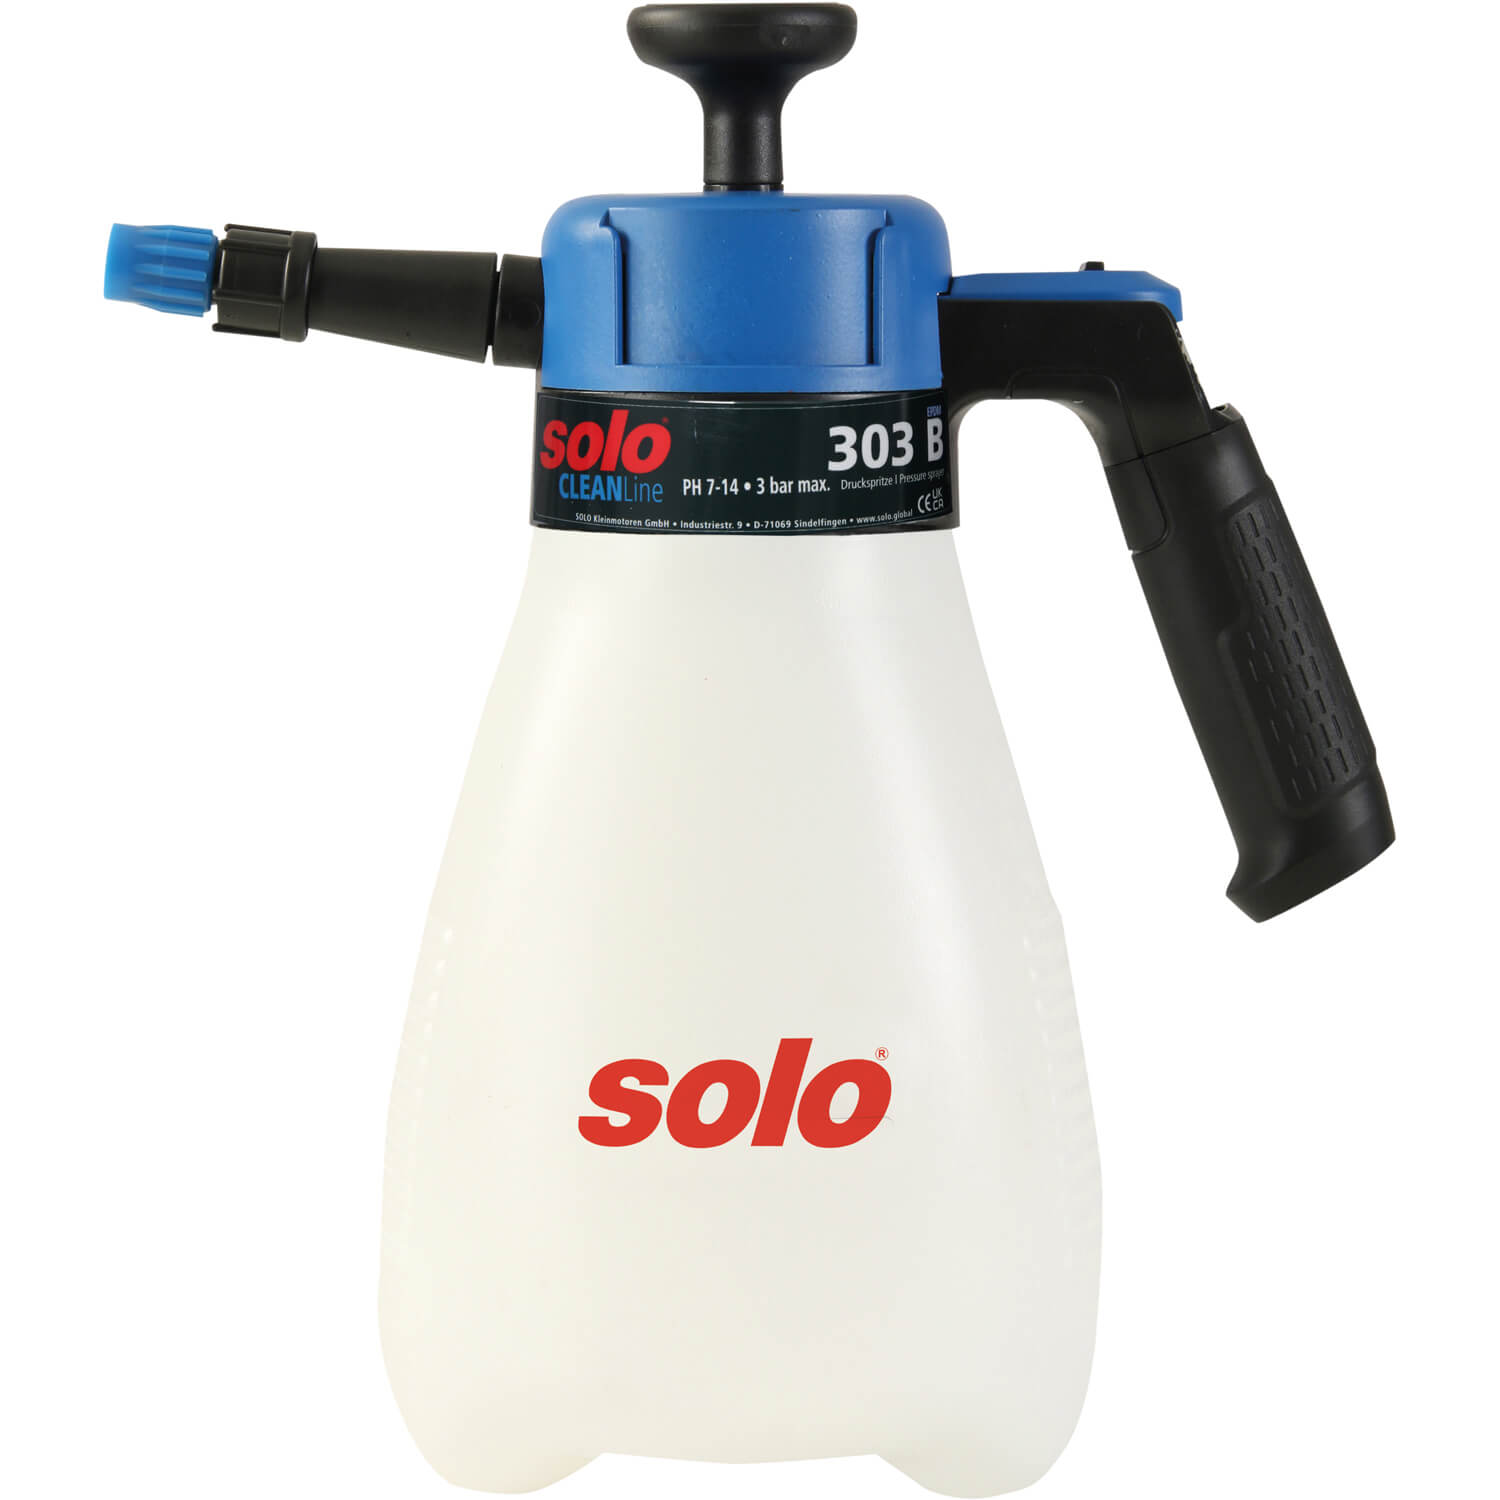 Обприскувач ручний SOLO, 1.25 л, поршневий, тиск 3 бар, вага 0.45 кг | solo 303B